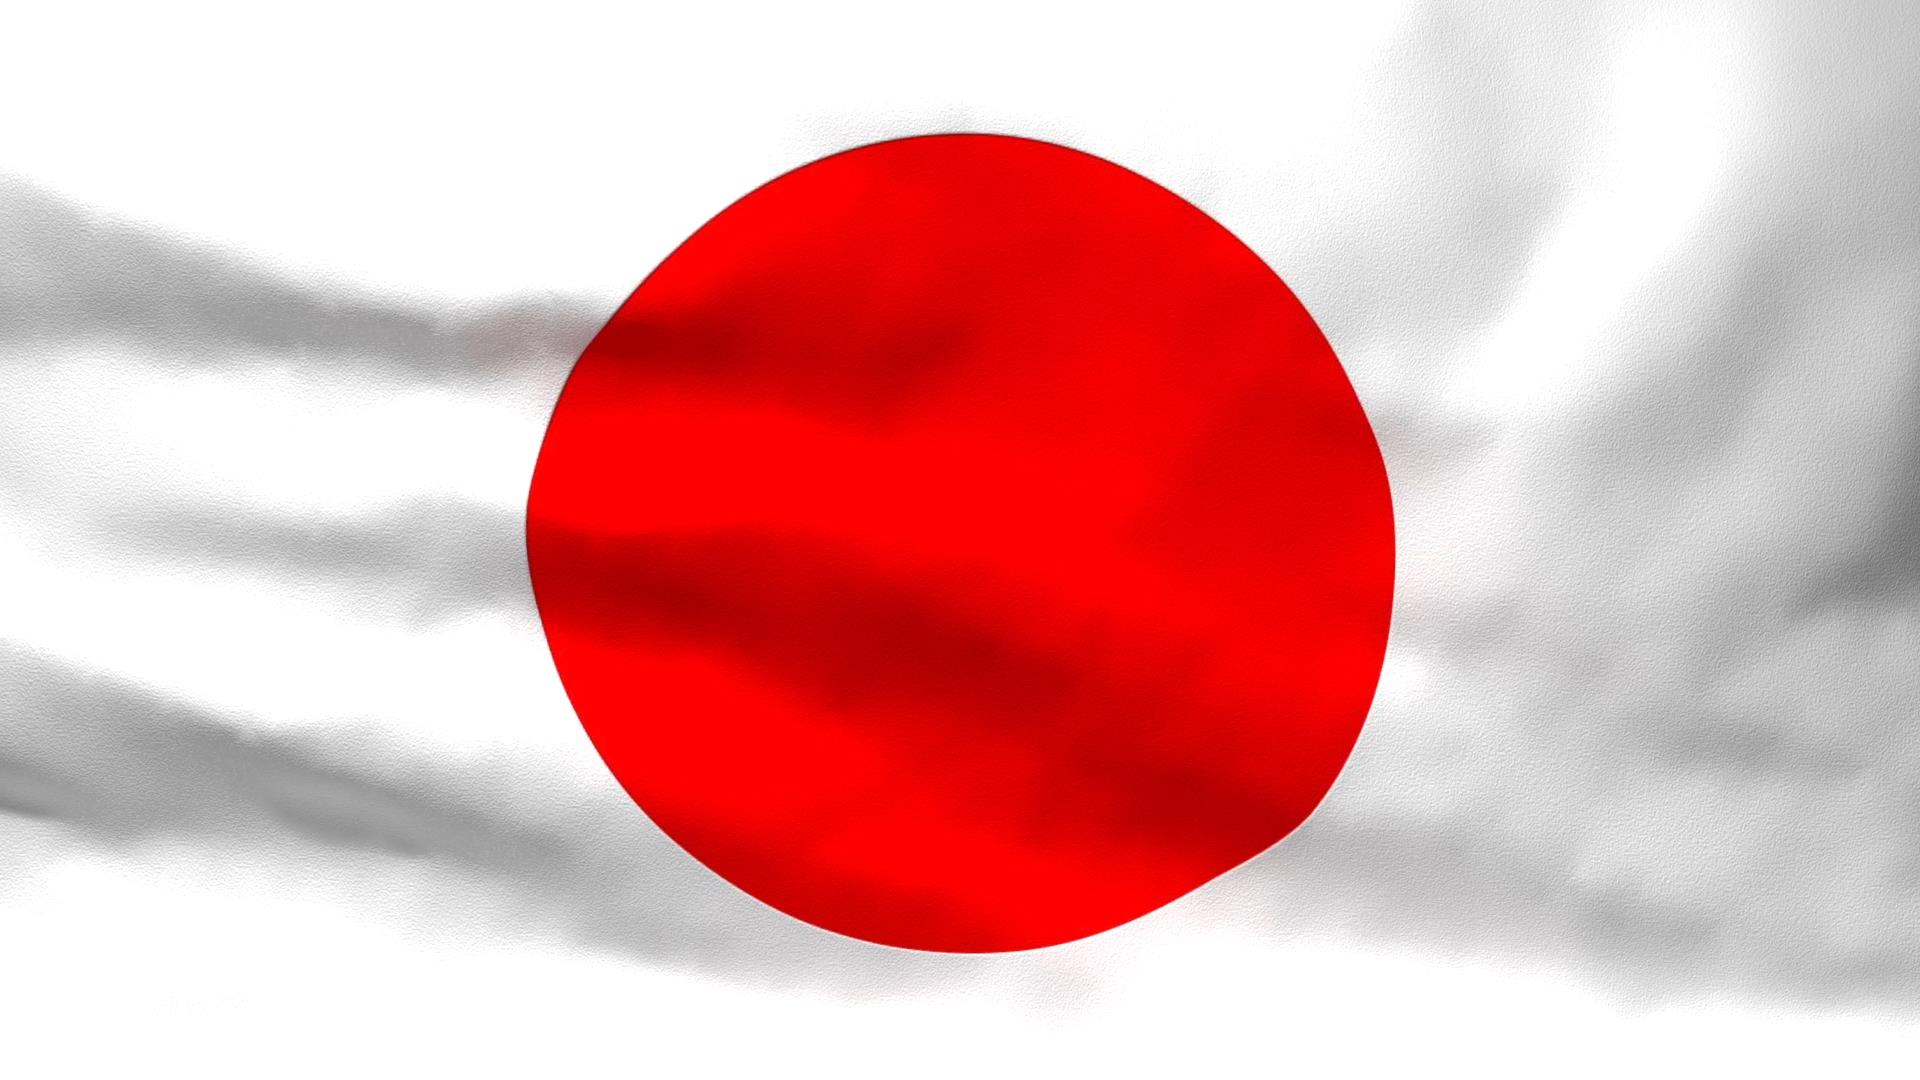 Quốc kỳ Nhật Bản được coi là một trong những biểu tượng đặc trưng của nước này, đại diện cho lòng tự hào và tình yêu đối với đất nước. Từ Sapporo đến Kyoto, bạn có thể dễ dàng nhìn thấy quốc kỳ với một hình chữ nhật trên nền trắng và màu đỏ tươi. Cùng khám phá đất nước và trải nghiệm sự đa dạng của văn hóa Nhật Bản!